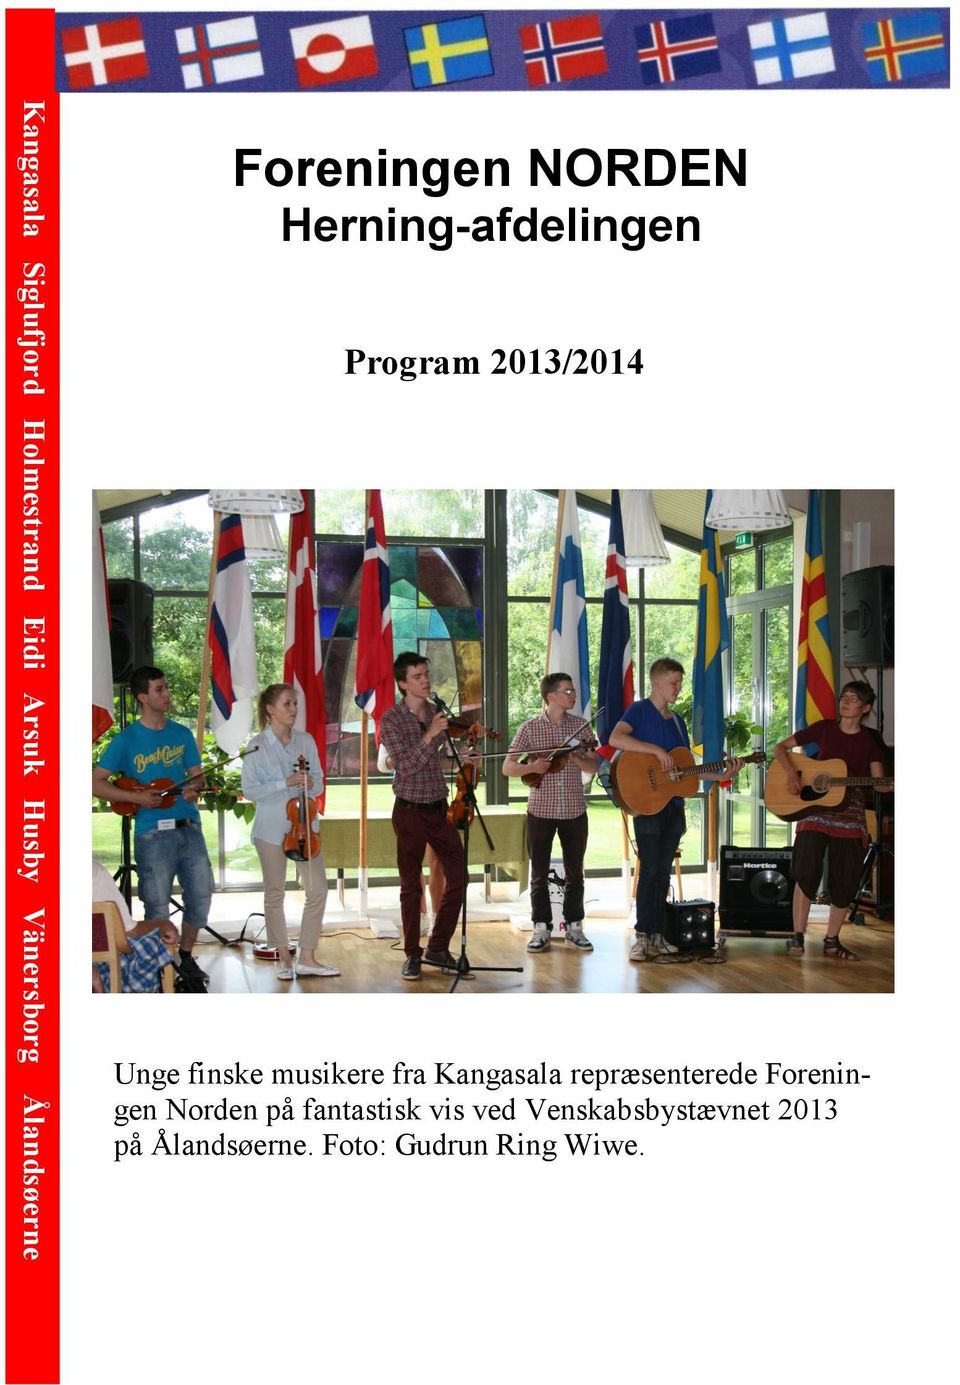 Unge finske musikere fra Kangasala repræsenterede Foreningen Norden